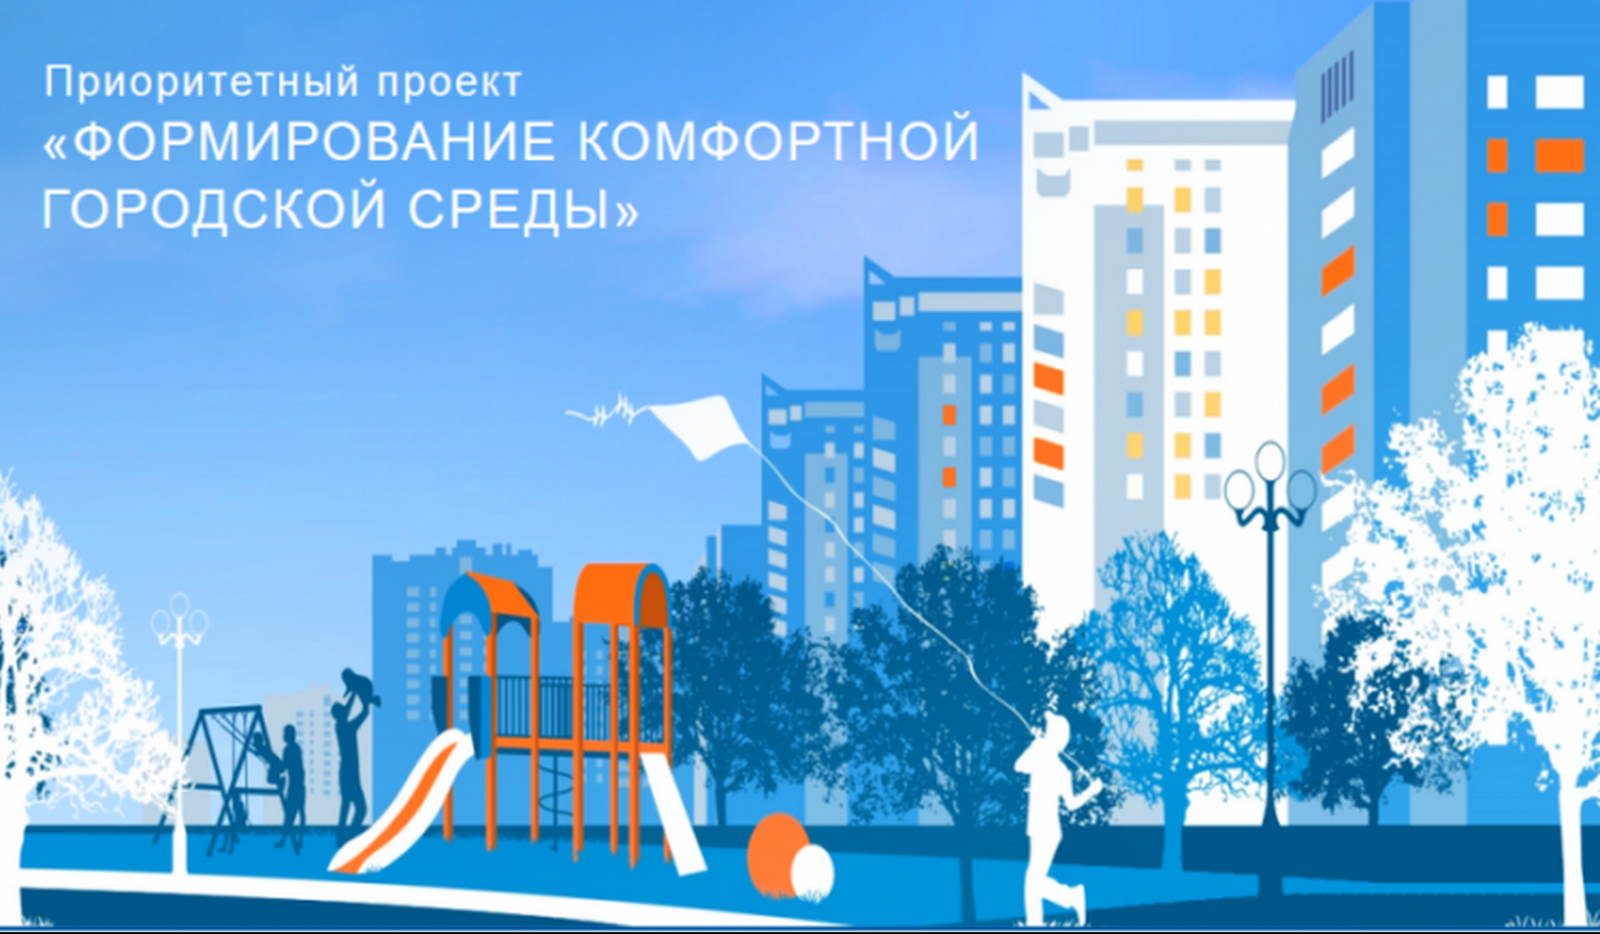 Путин продлил проект «Формирование комфортной городской среды» до 2030 года